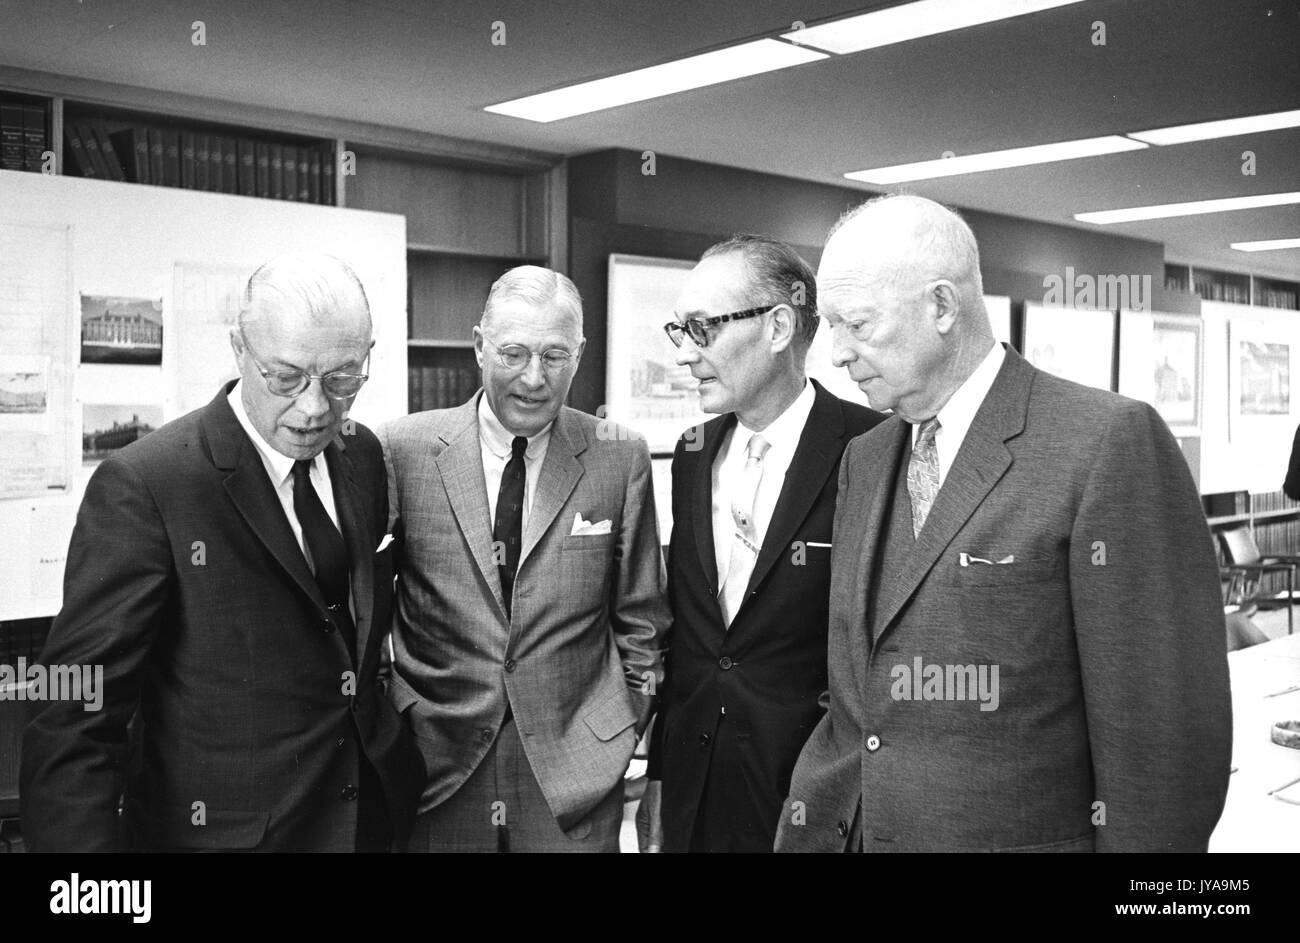 Milton stover eisenhower (sinistra), presidente della Johns Hopkins University, e dwight d eisenhower (a destra), il presidente degli Stati Uniti, permanente e conversare con due colleghi, 1965. Foto Stock